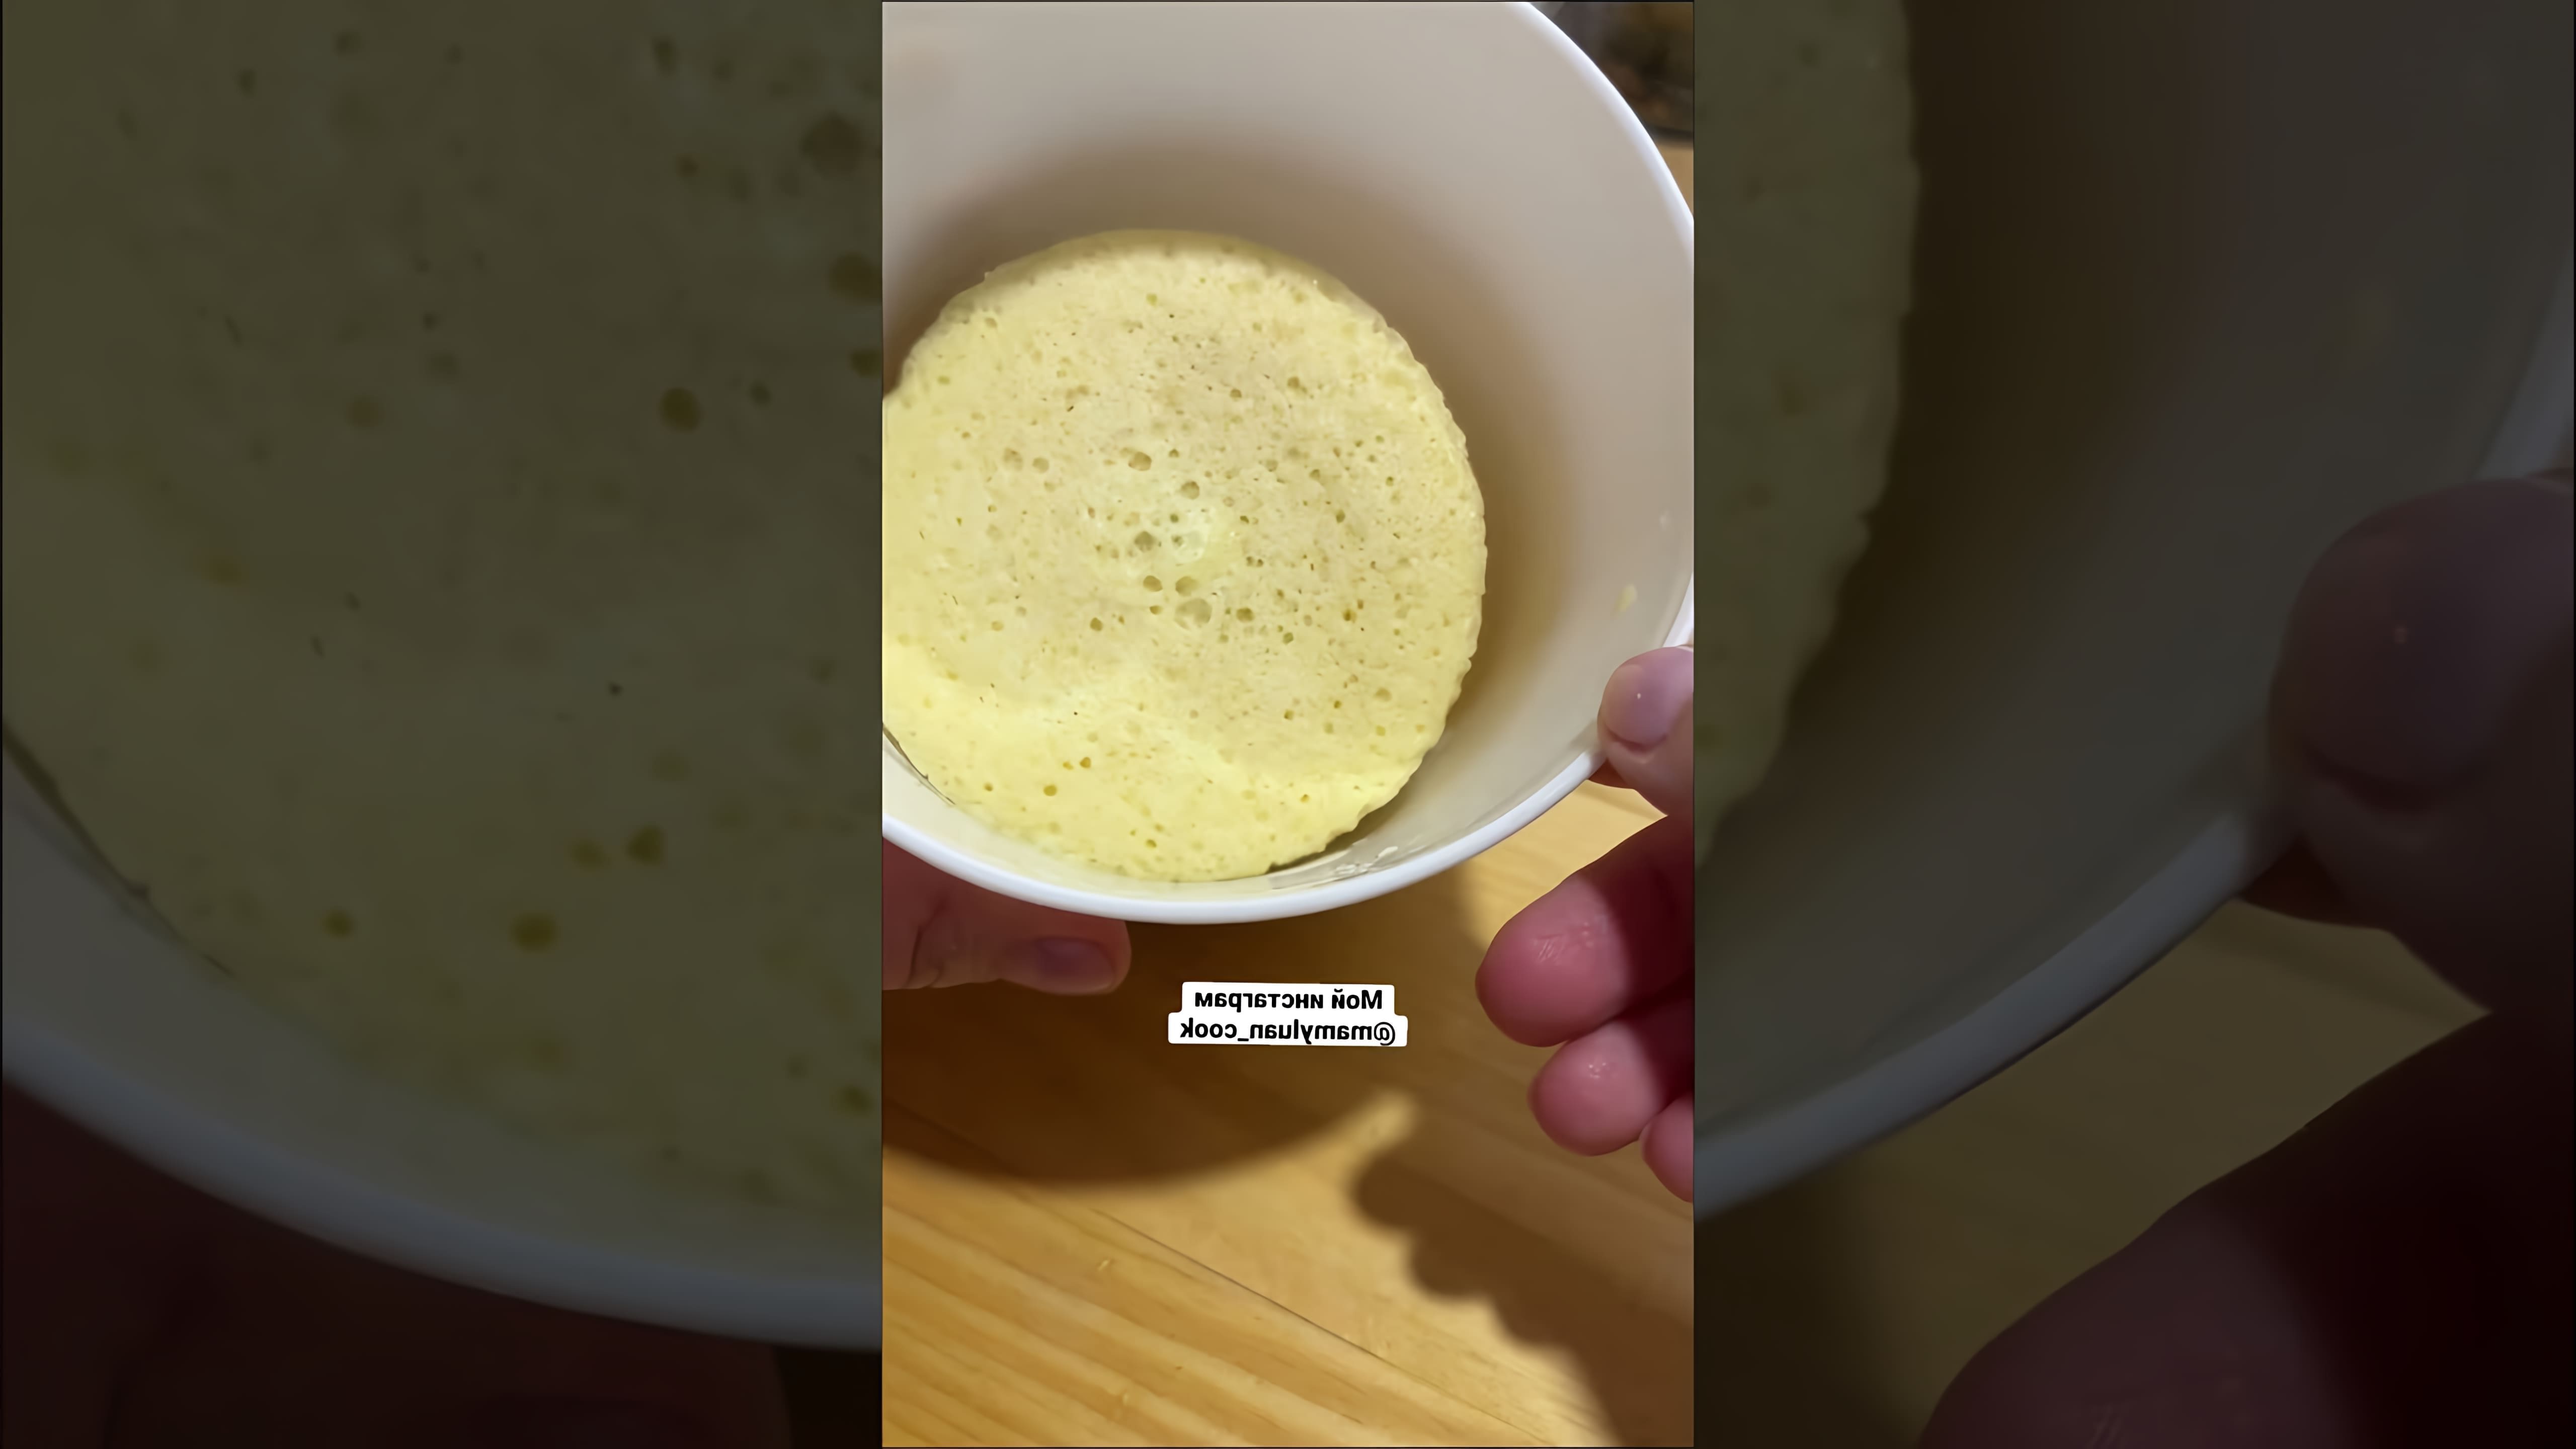 В этом видео демонстрируется рецепт приготовления Бенто торта без использования духовки и миксера